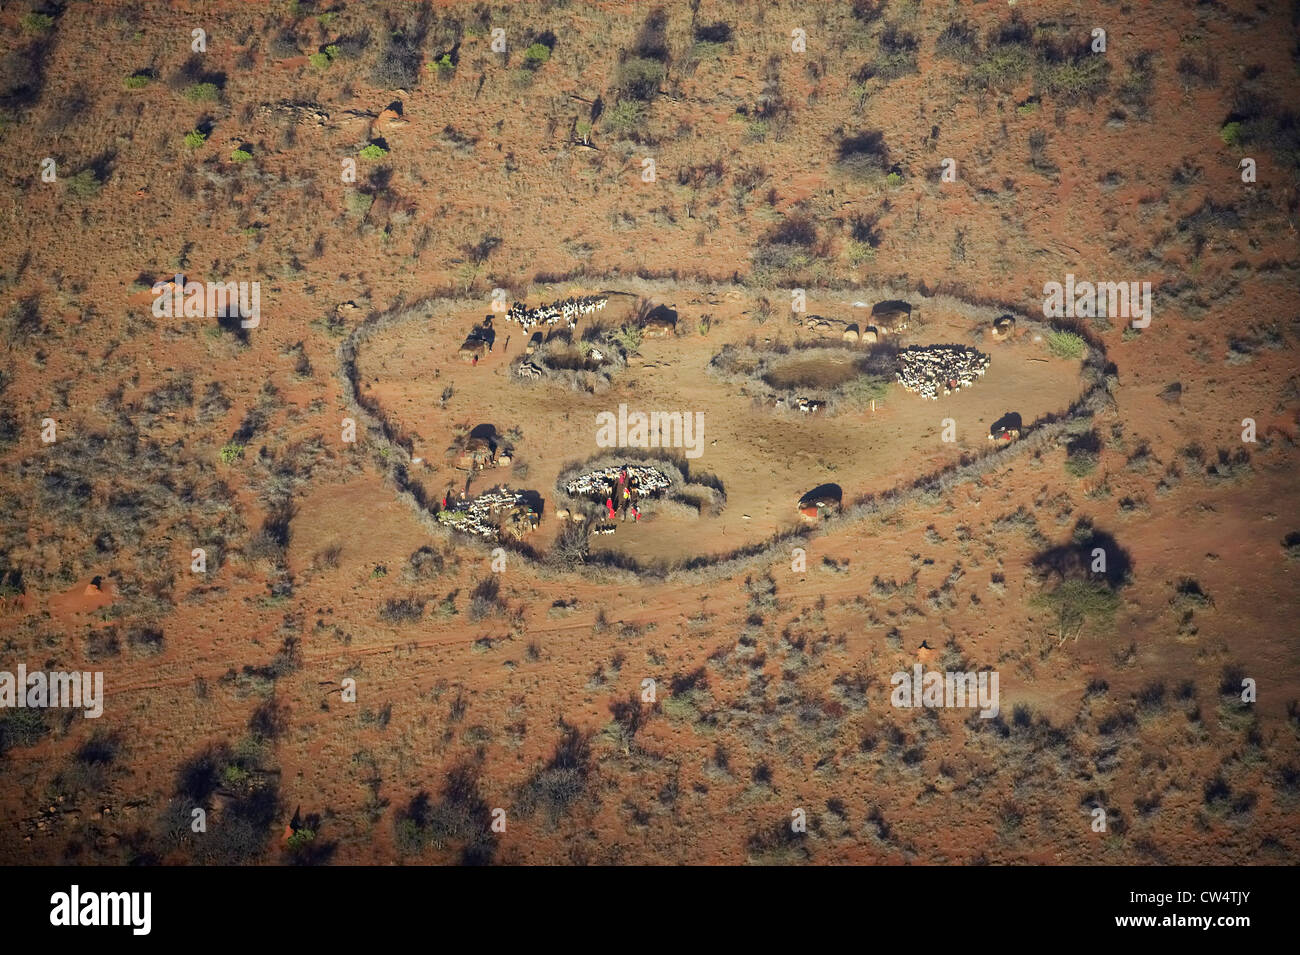 Vue aérienne de Masai village dans le cercle de la nature et les troupeaux de chèvres près de Lewa Conservancy, Kenya, Africa Banque D'Images